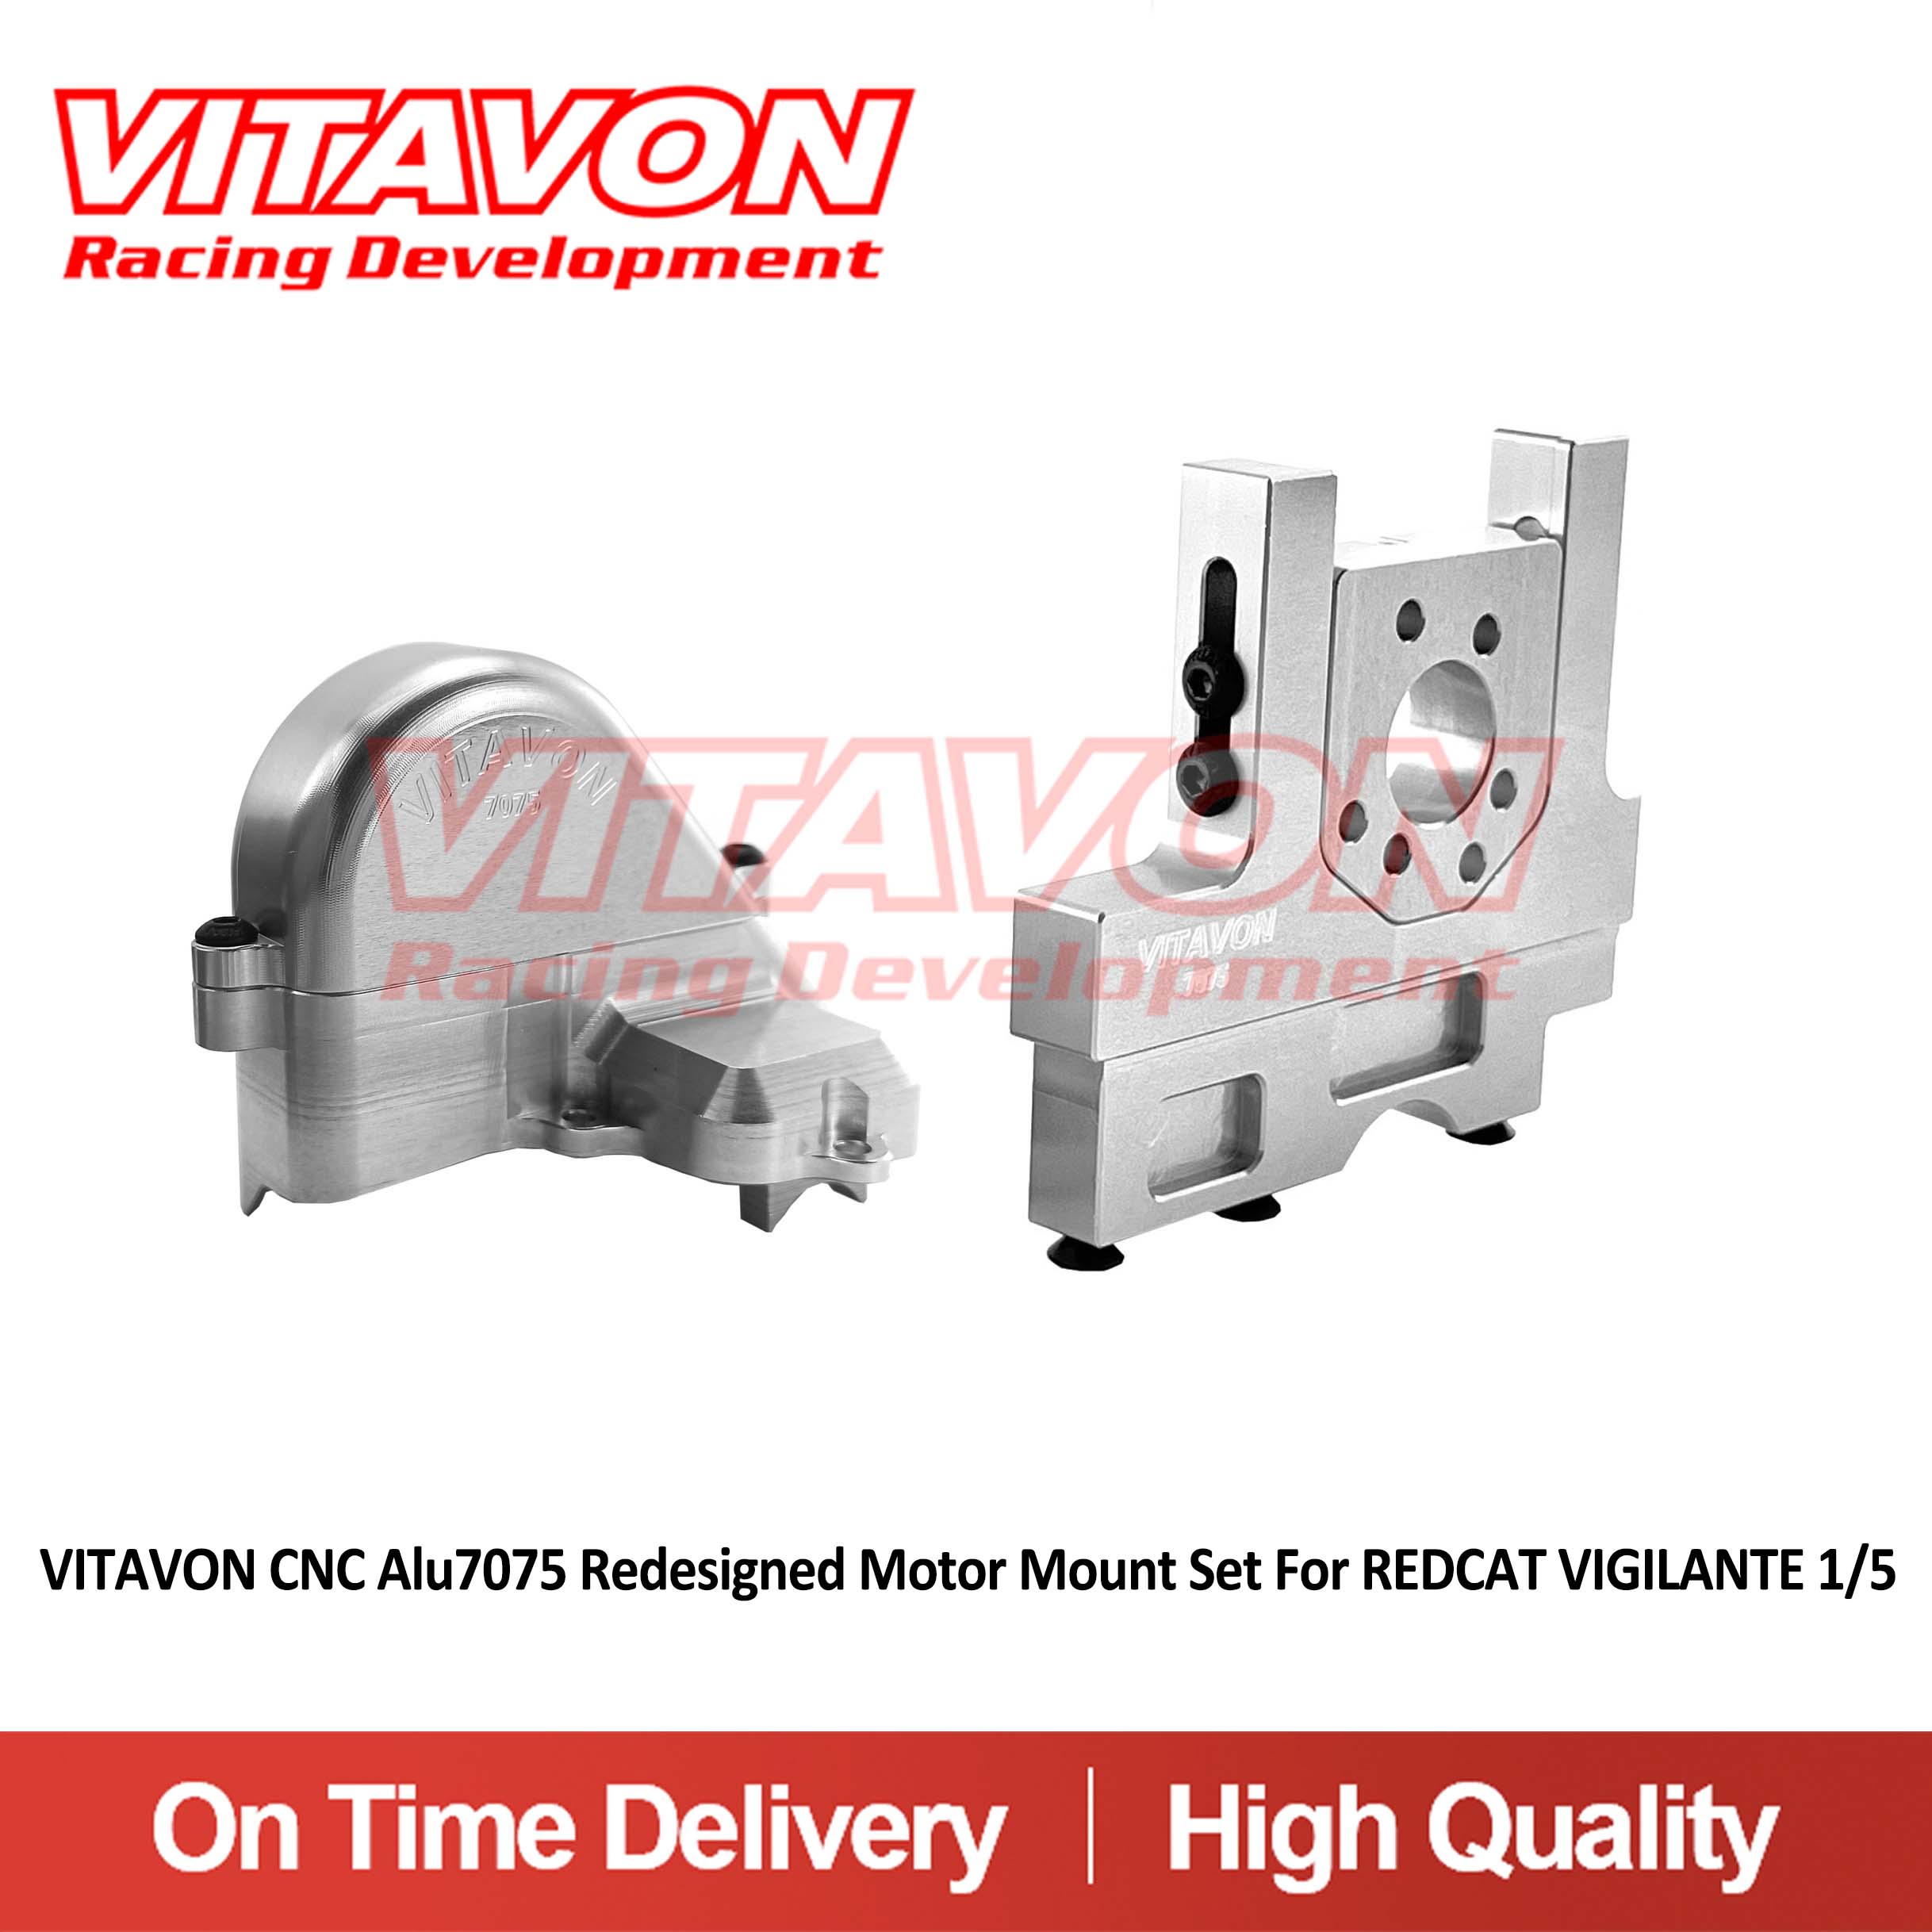 VITAVON CNC Alu7075 Redesigned Motor Mount Set For REDCAT VIGILANTE 1/5